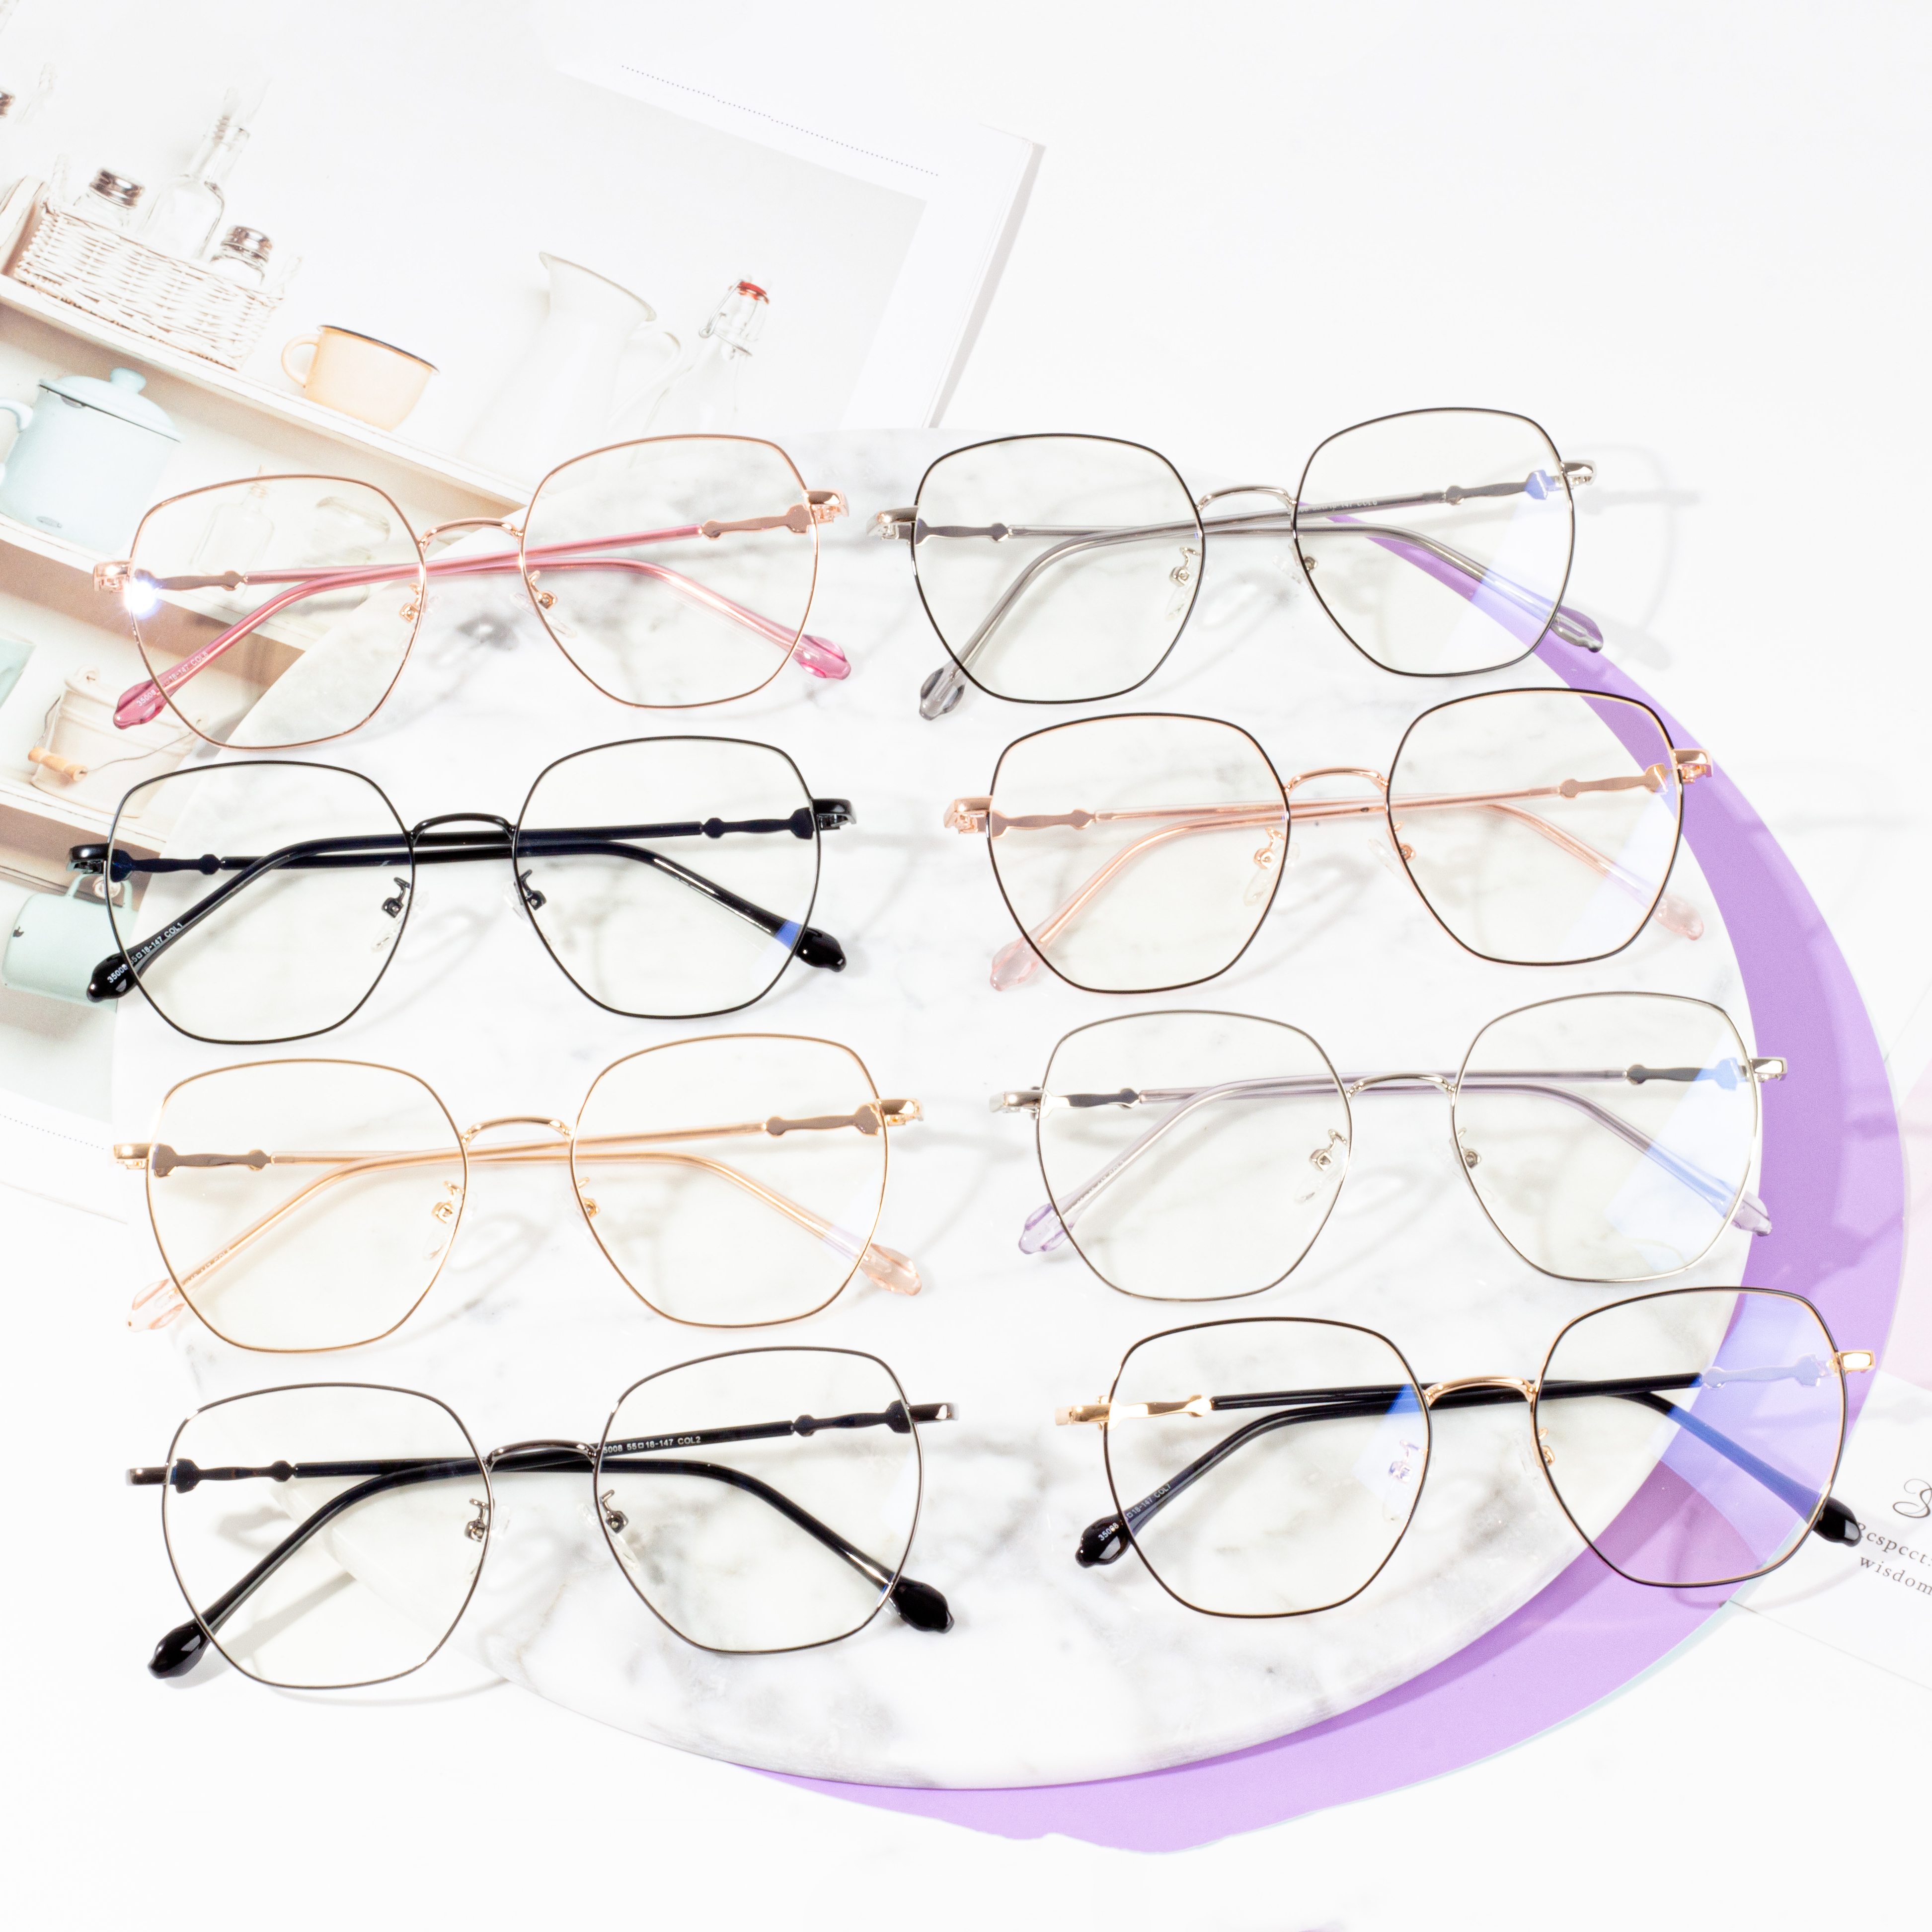 Kornizë optike për syze në modë për femra